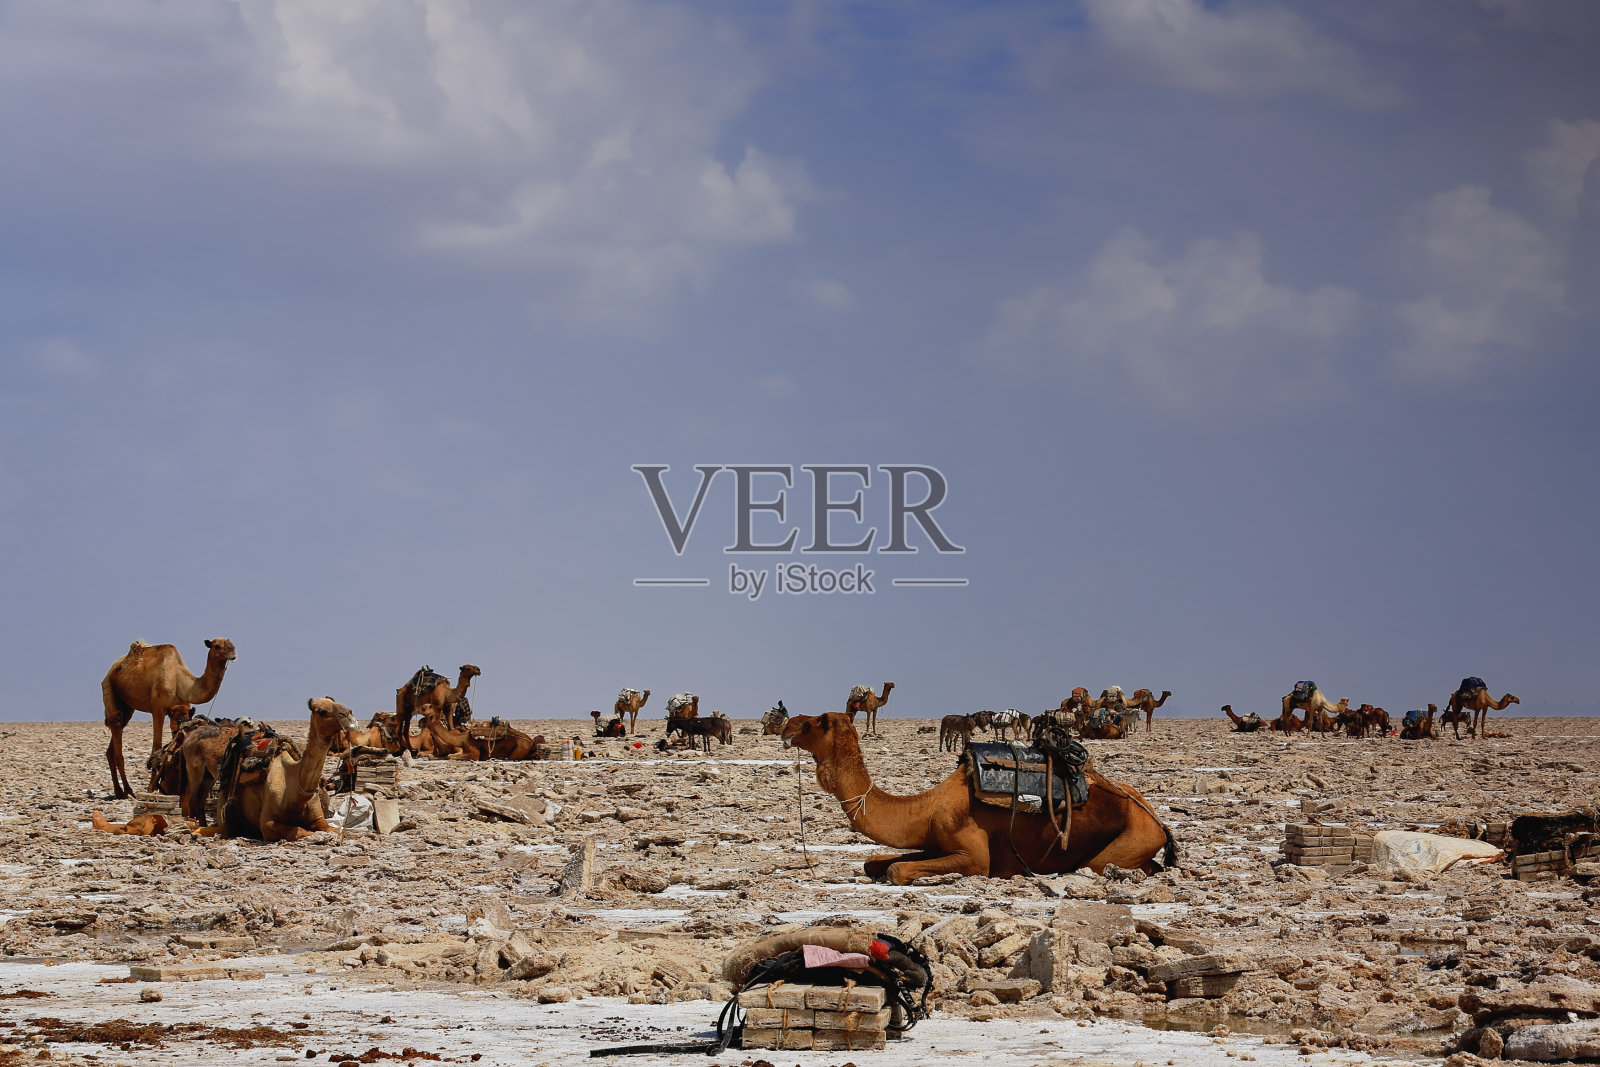 单峰驼和驮着鼹鼠盐板的驴子。Danakil-Ethiopia。0353照片摄影图片